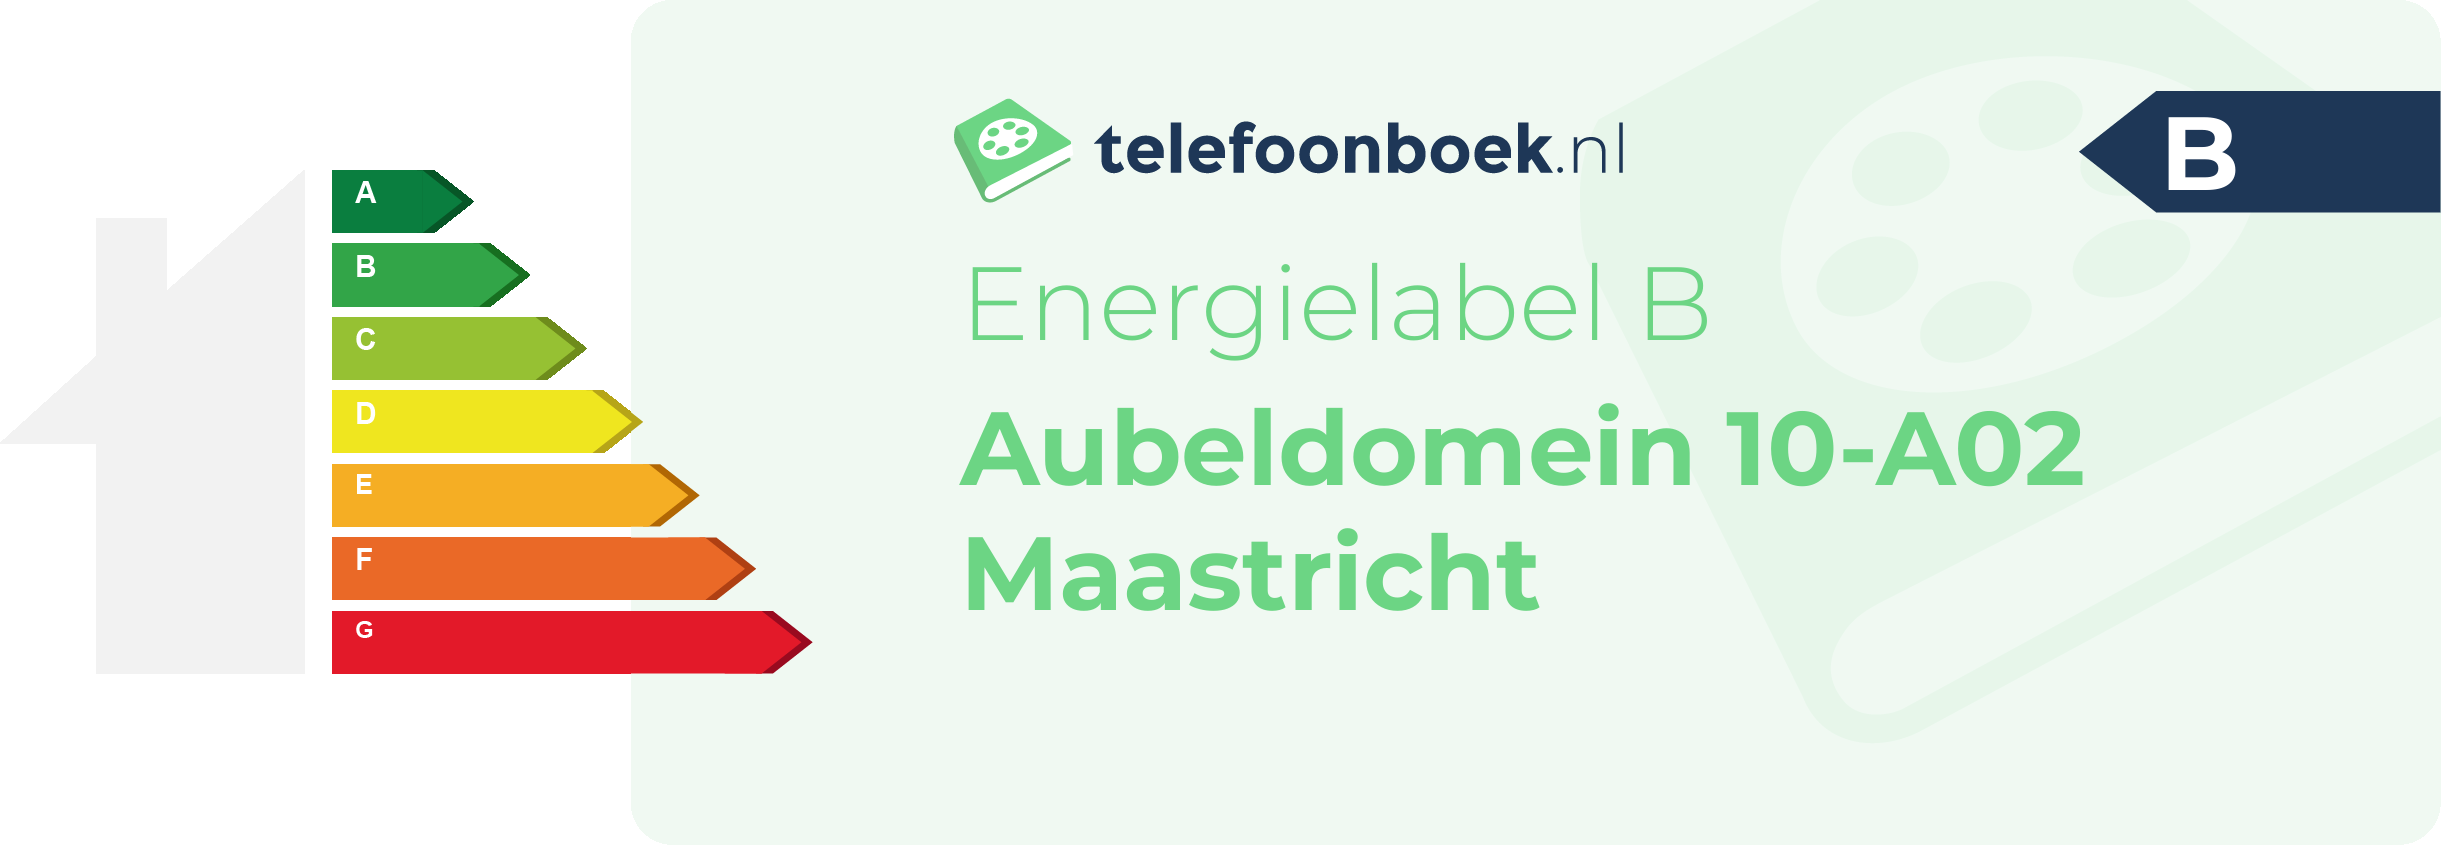 Energielabel Aubeldomein 10-A02 Maastricht